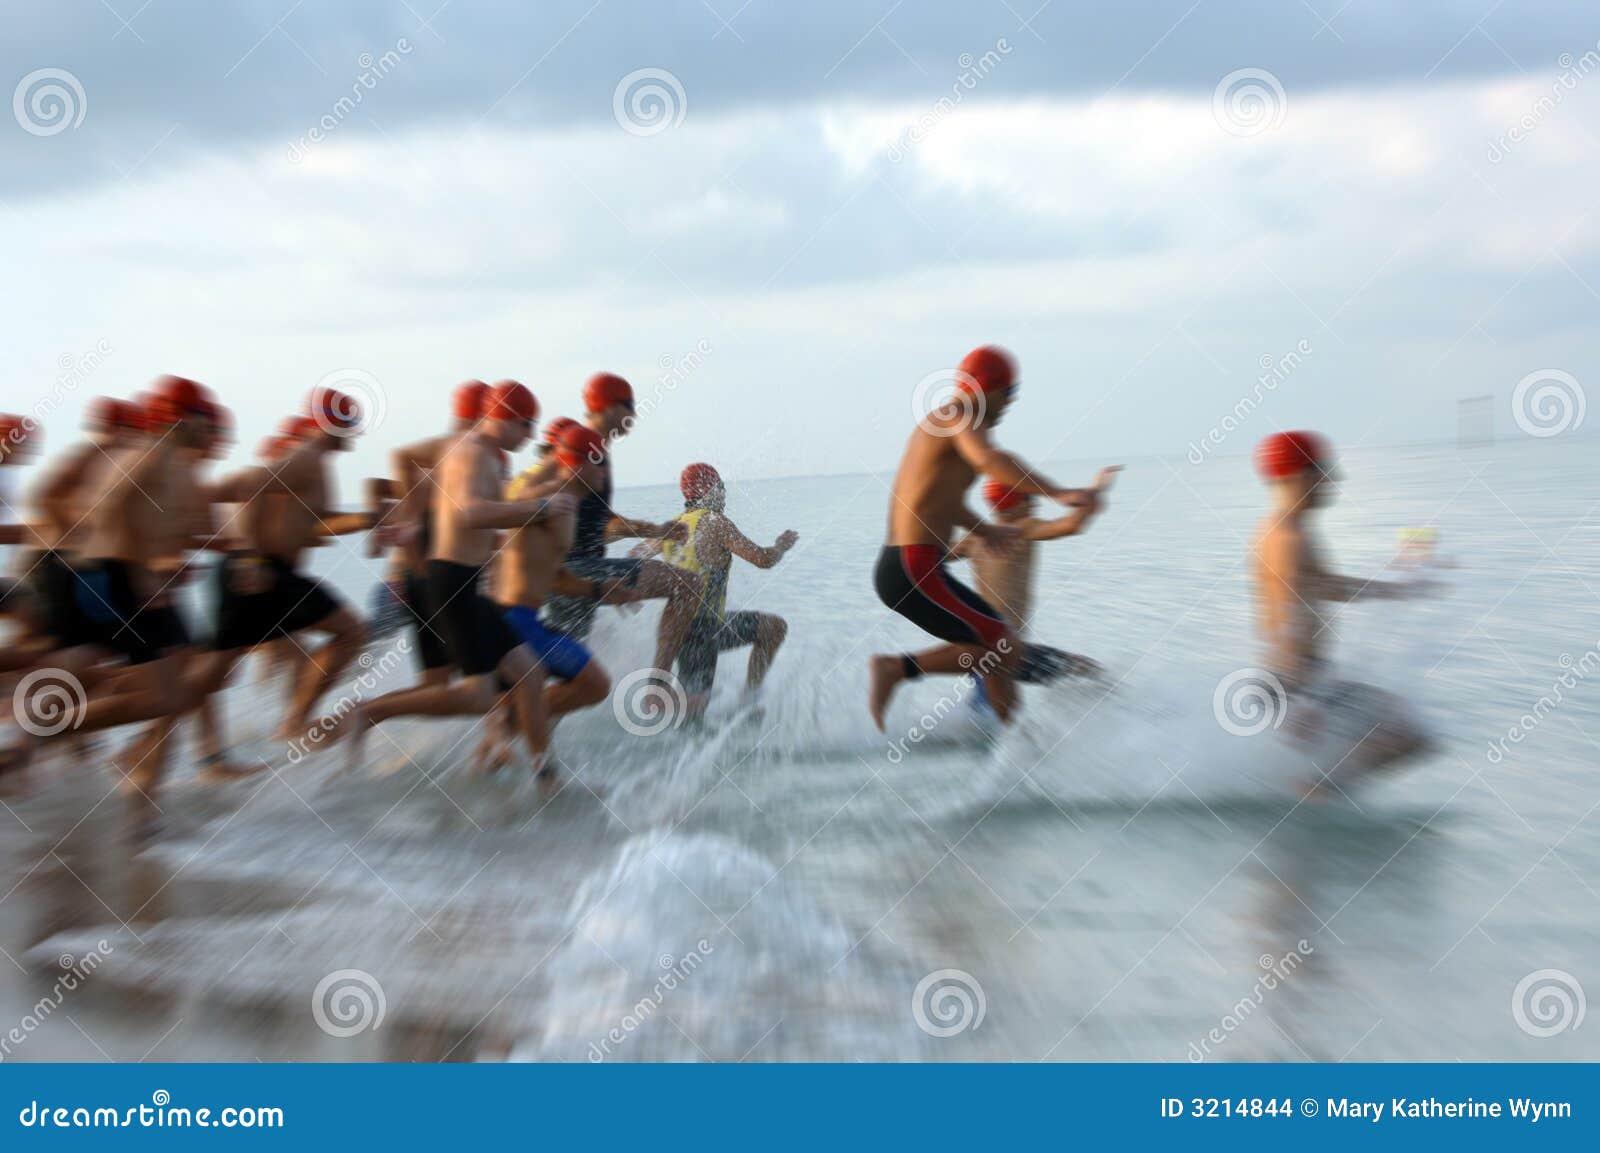 triathlon swim race blur